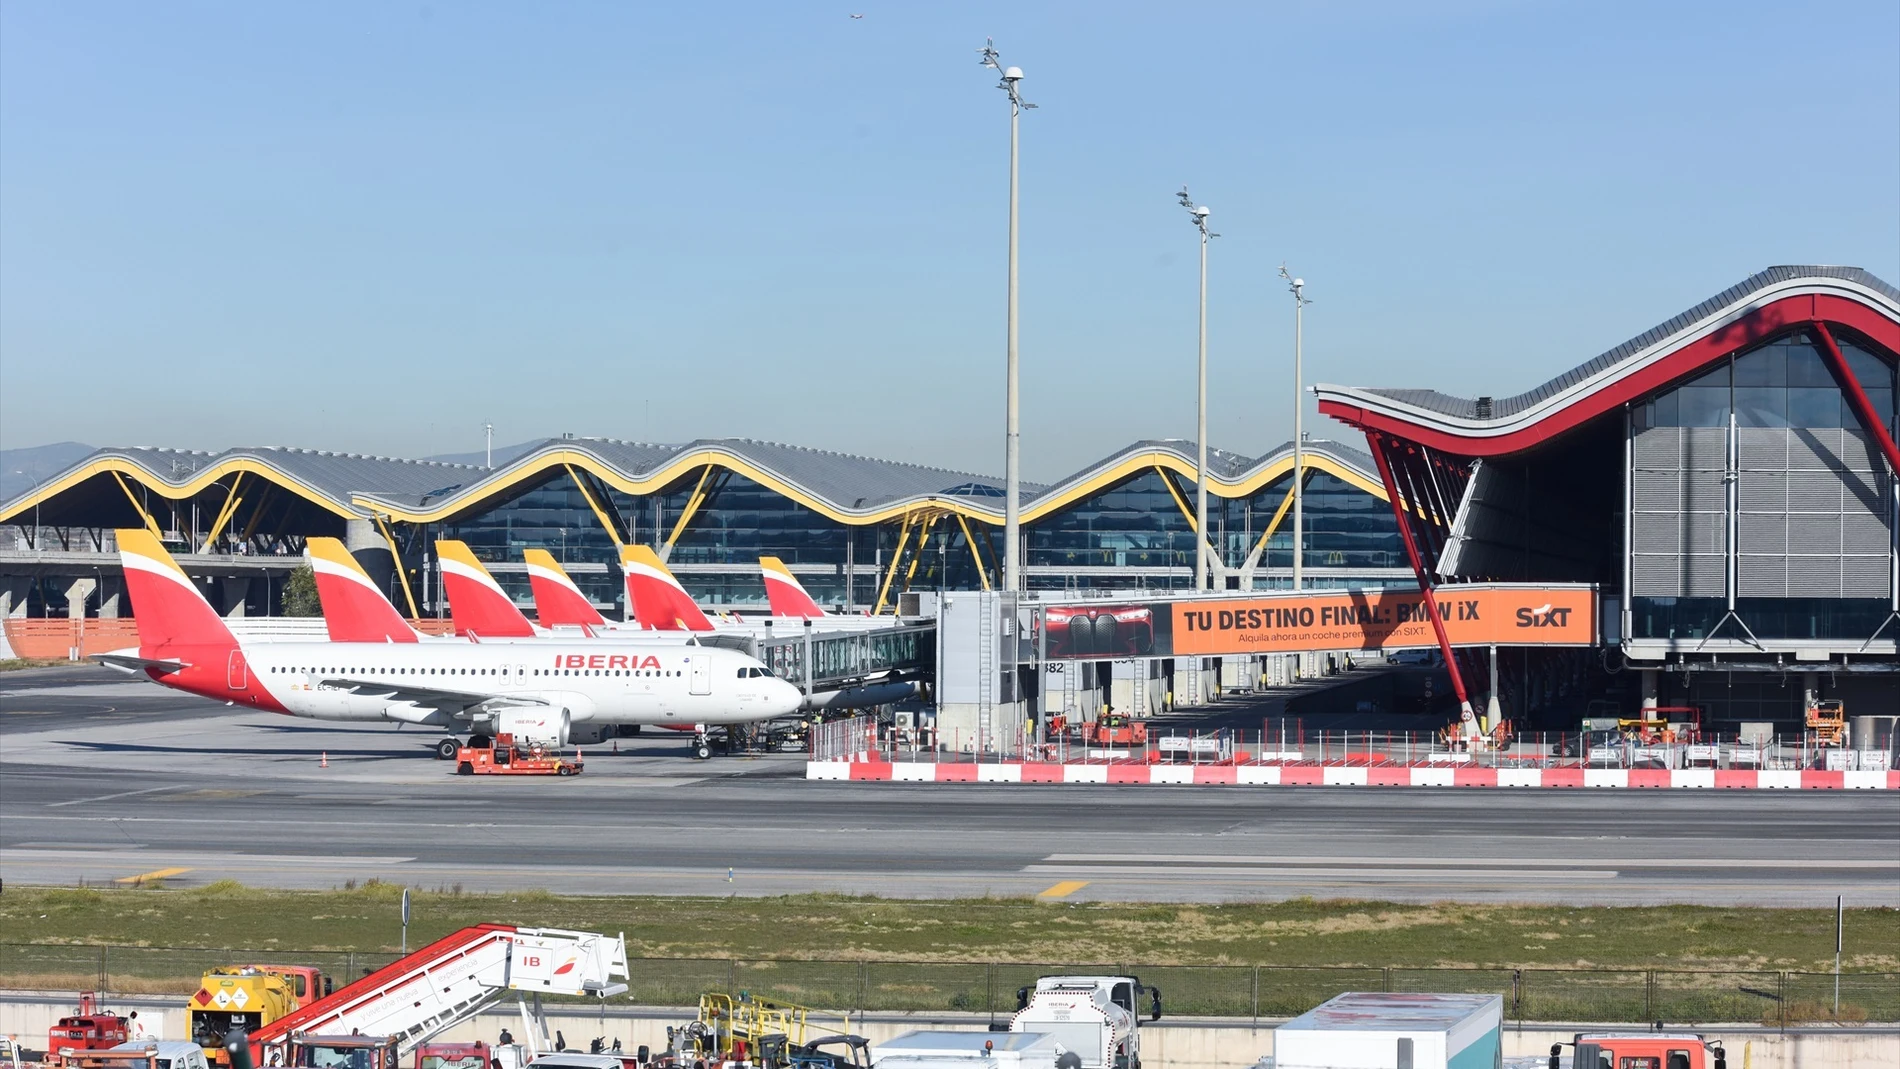 Imagen de archivo del aeropuerto de Madrid-Barajas Adolfo Suárez